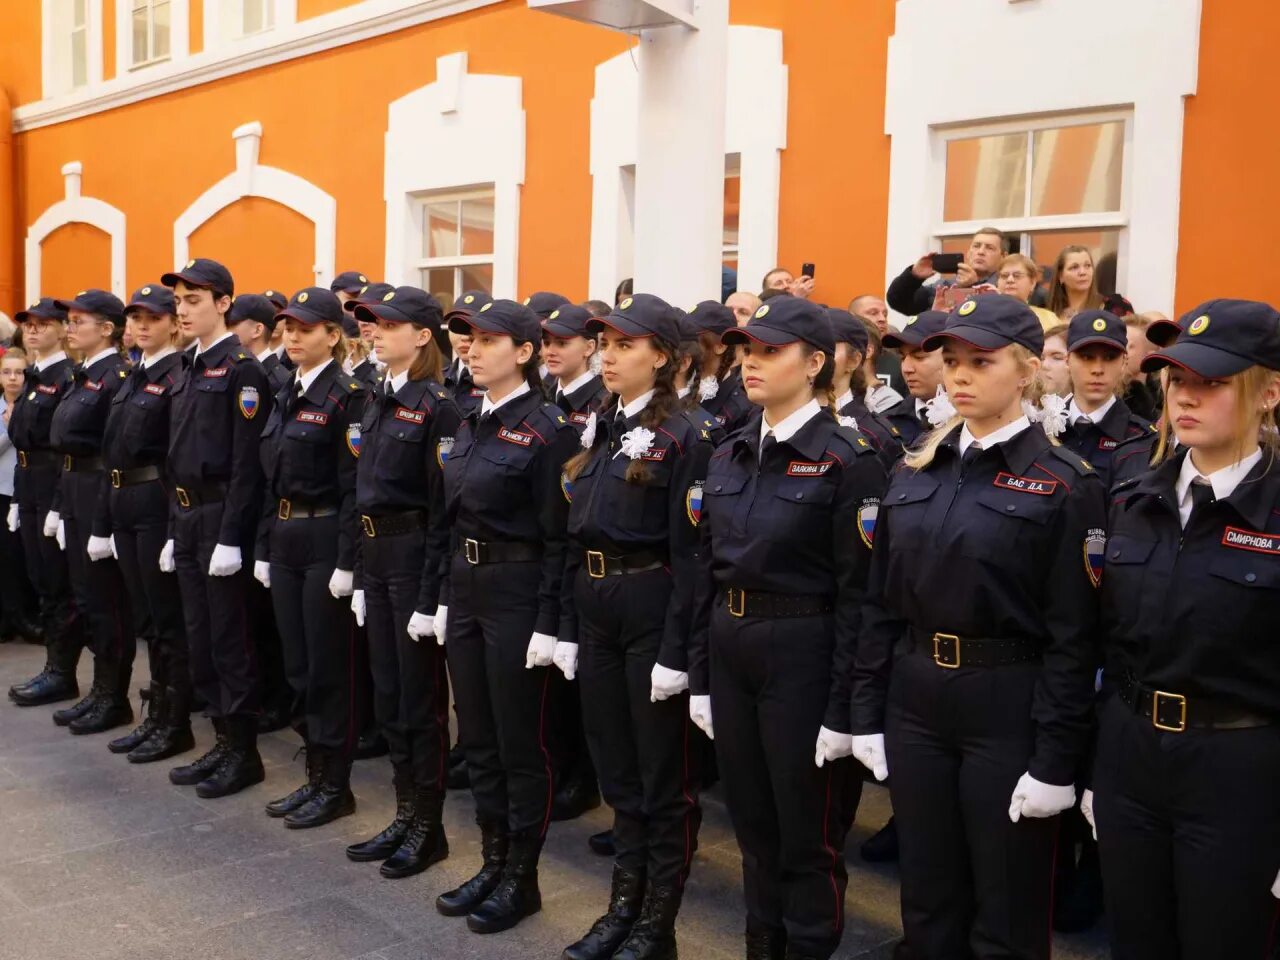 После 9 класса можно поступить в мвд. Колледж полиции в Санкт-Петербурге. Санкт-Петербургская Академия милиции колледж. Академия милиции в СПБ колледж. Колледж полиции знаменная группа.